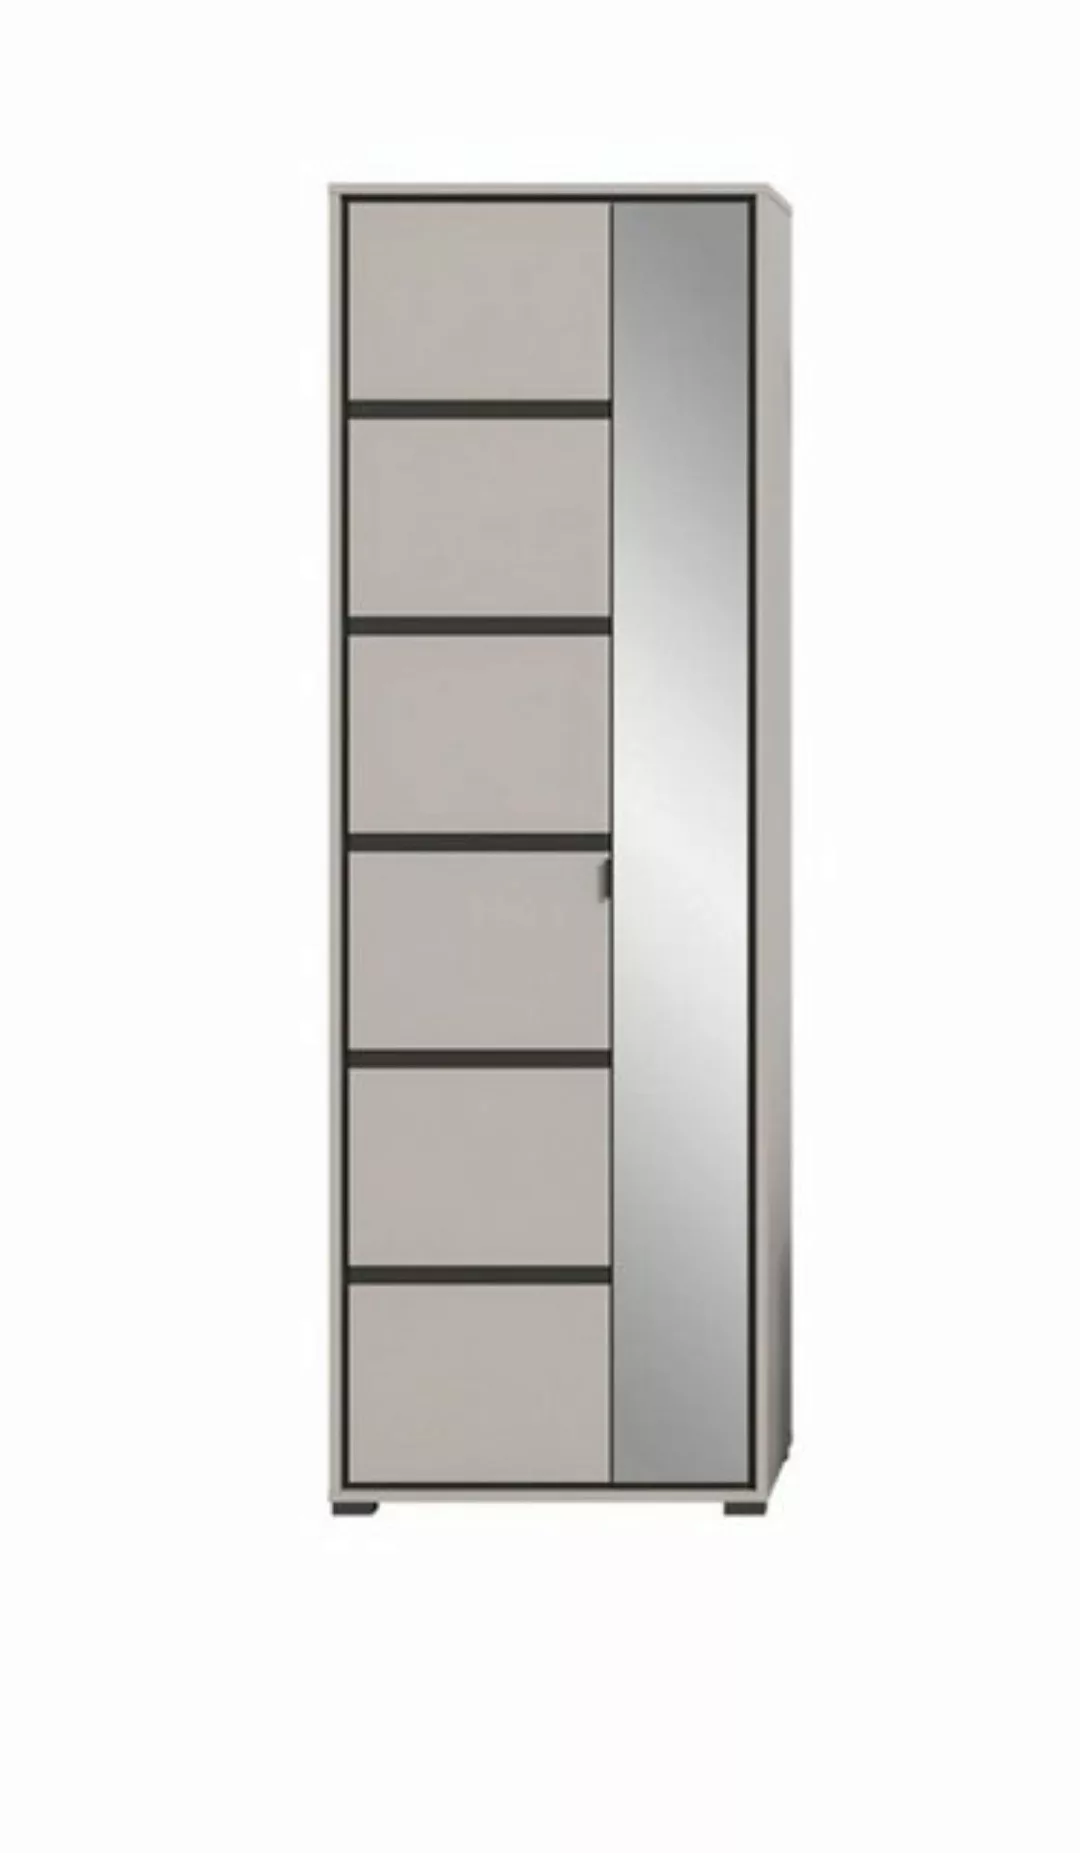 xonox.home Garderobenschrank in grau mit 2 Türen und 6 Fächern. Abmessungen günstig online kaufen